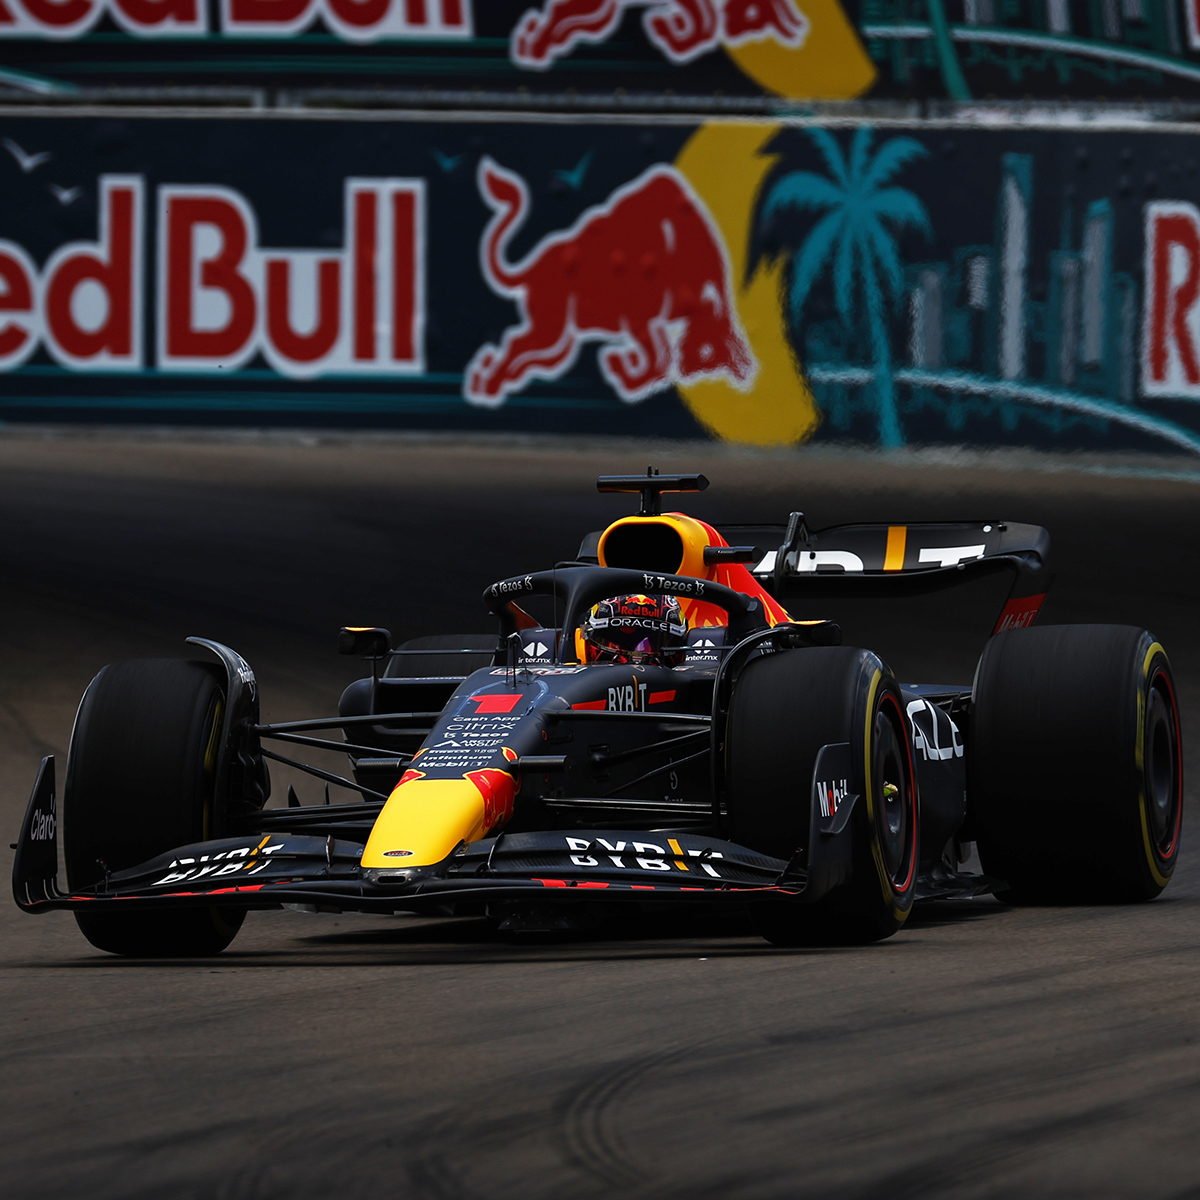 1:43 RB18 GP Miami 2022 - Winnaar Max Verstappen - Schaalmodel - Red Bull Racing